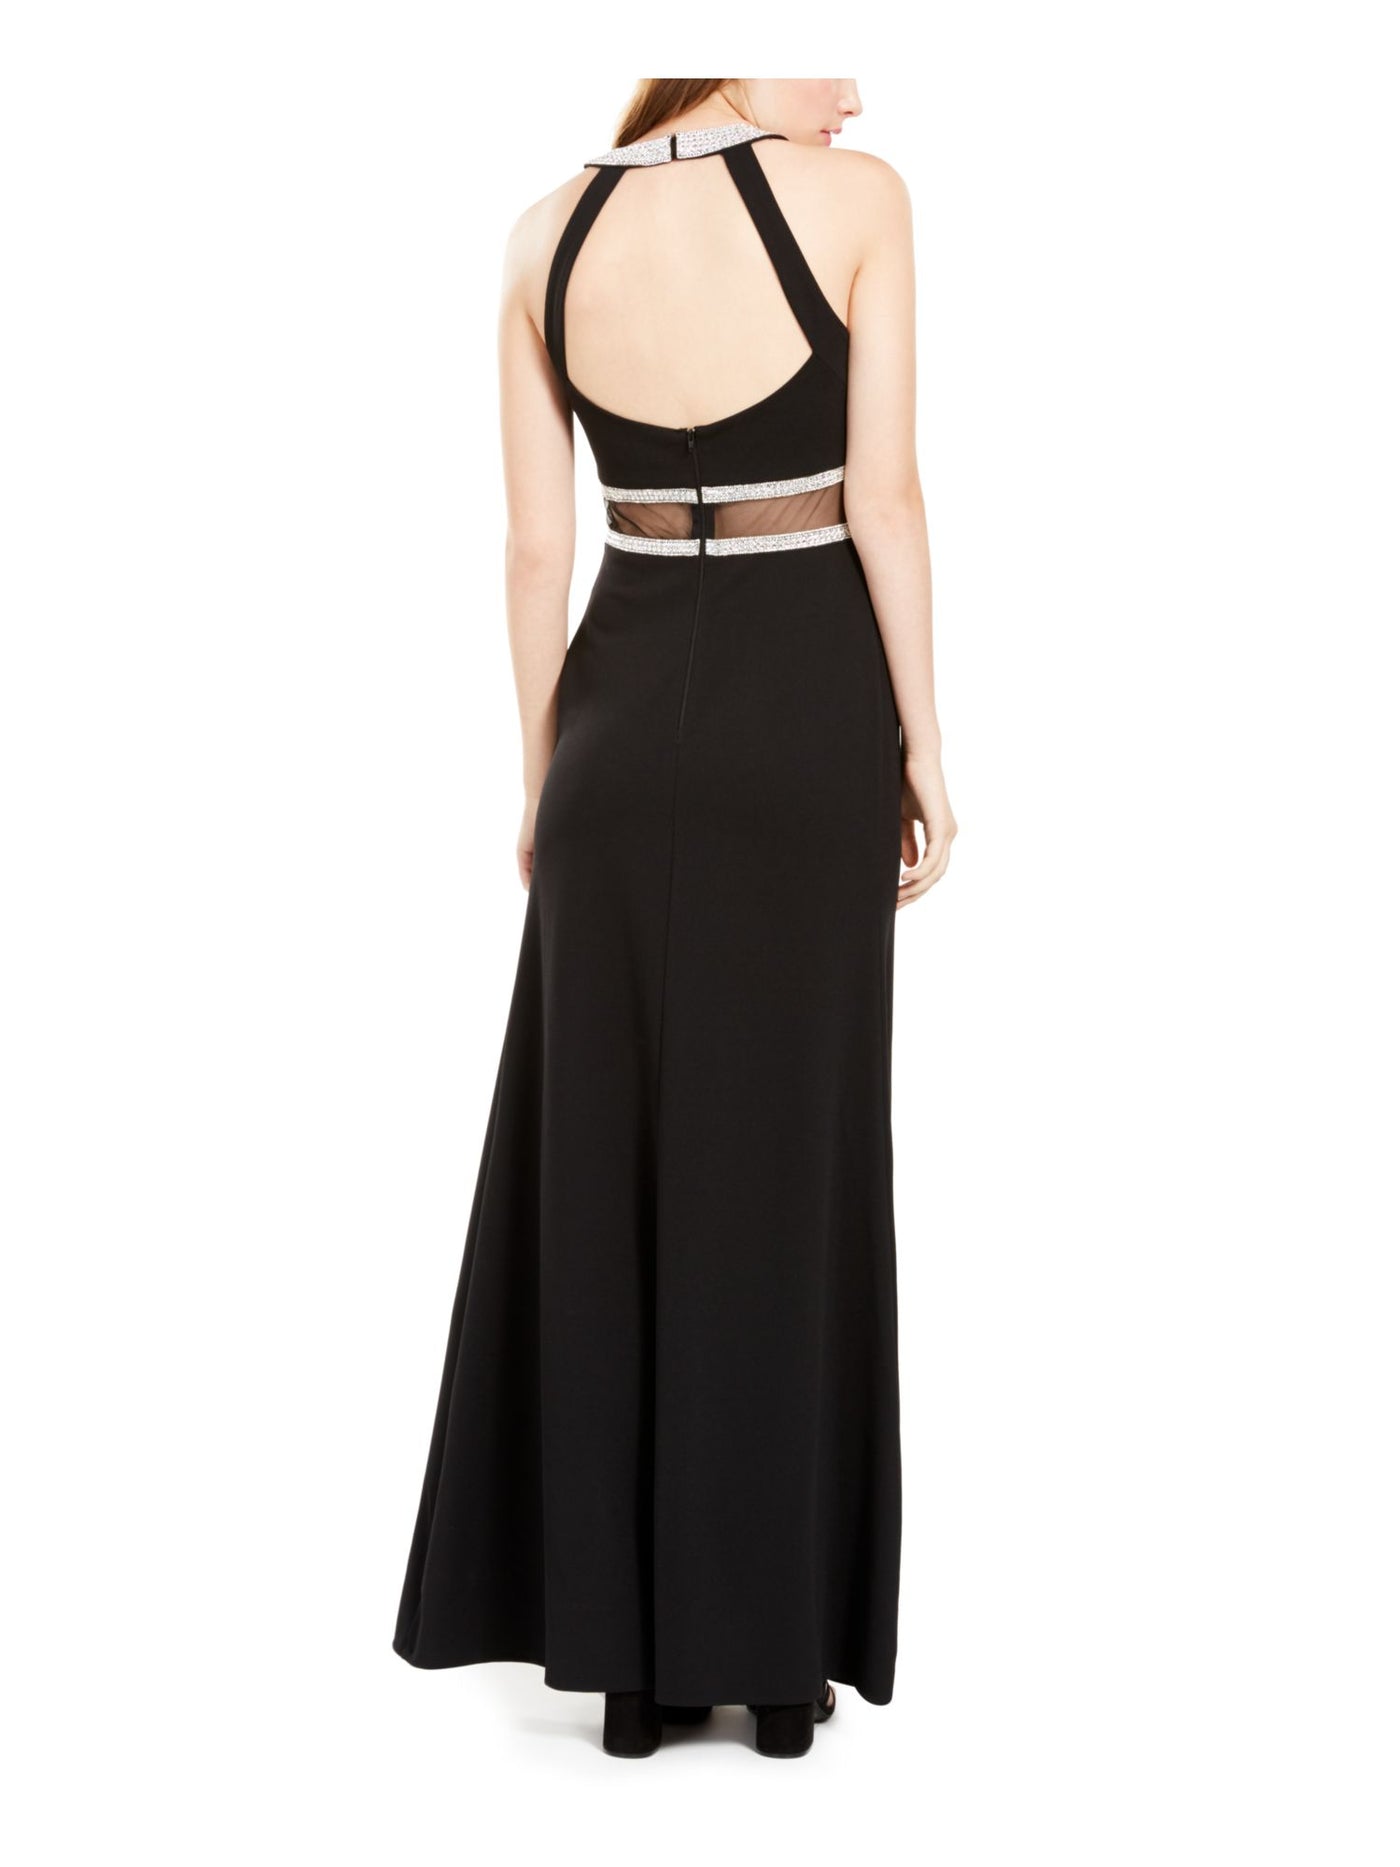 SEQUIN HEARTS Womens Black Slitted Sleeveless Halter Full-Length Formal Fit + Flare Dress Juniors 3